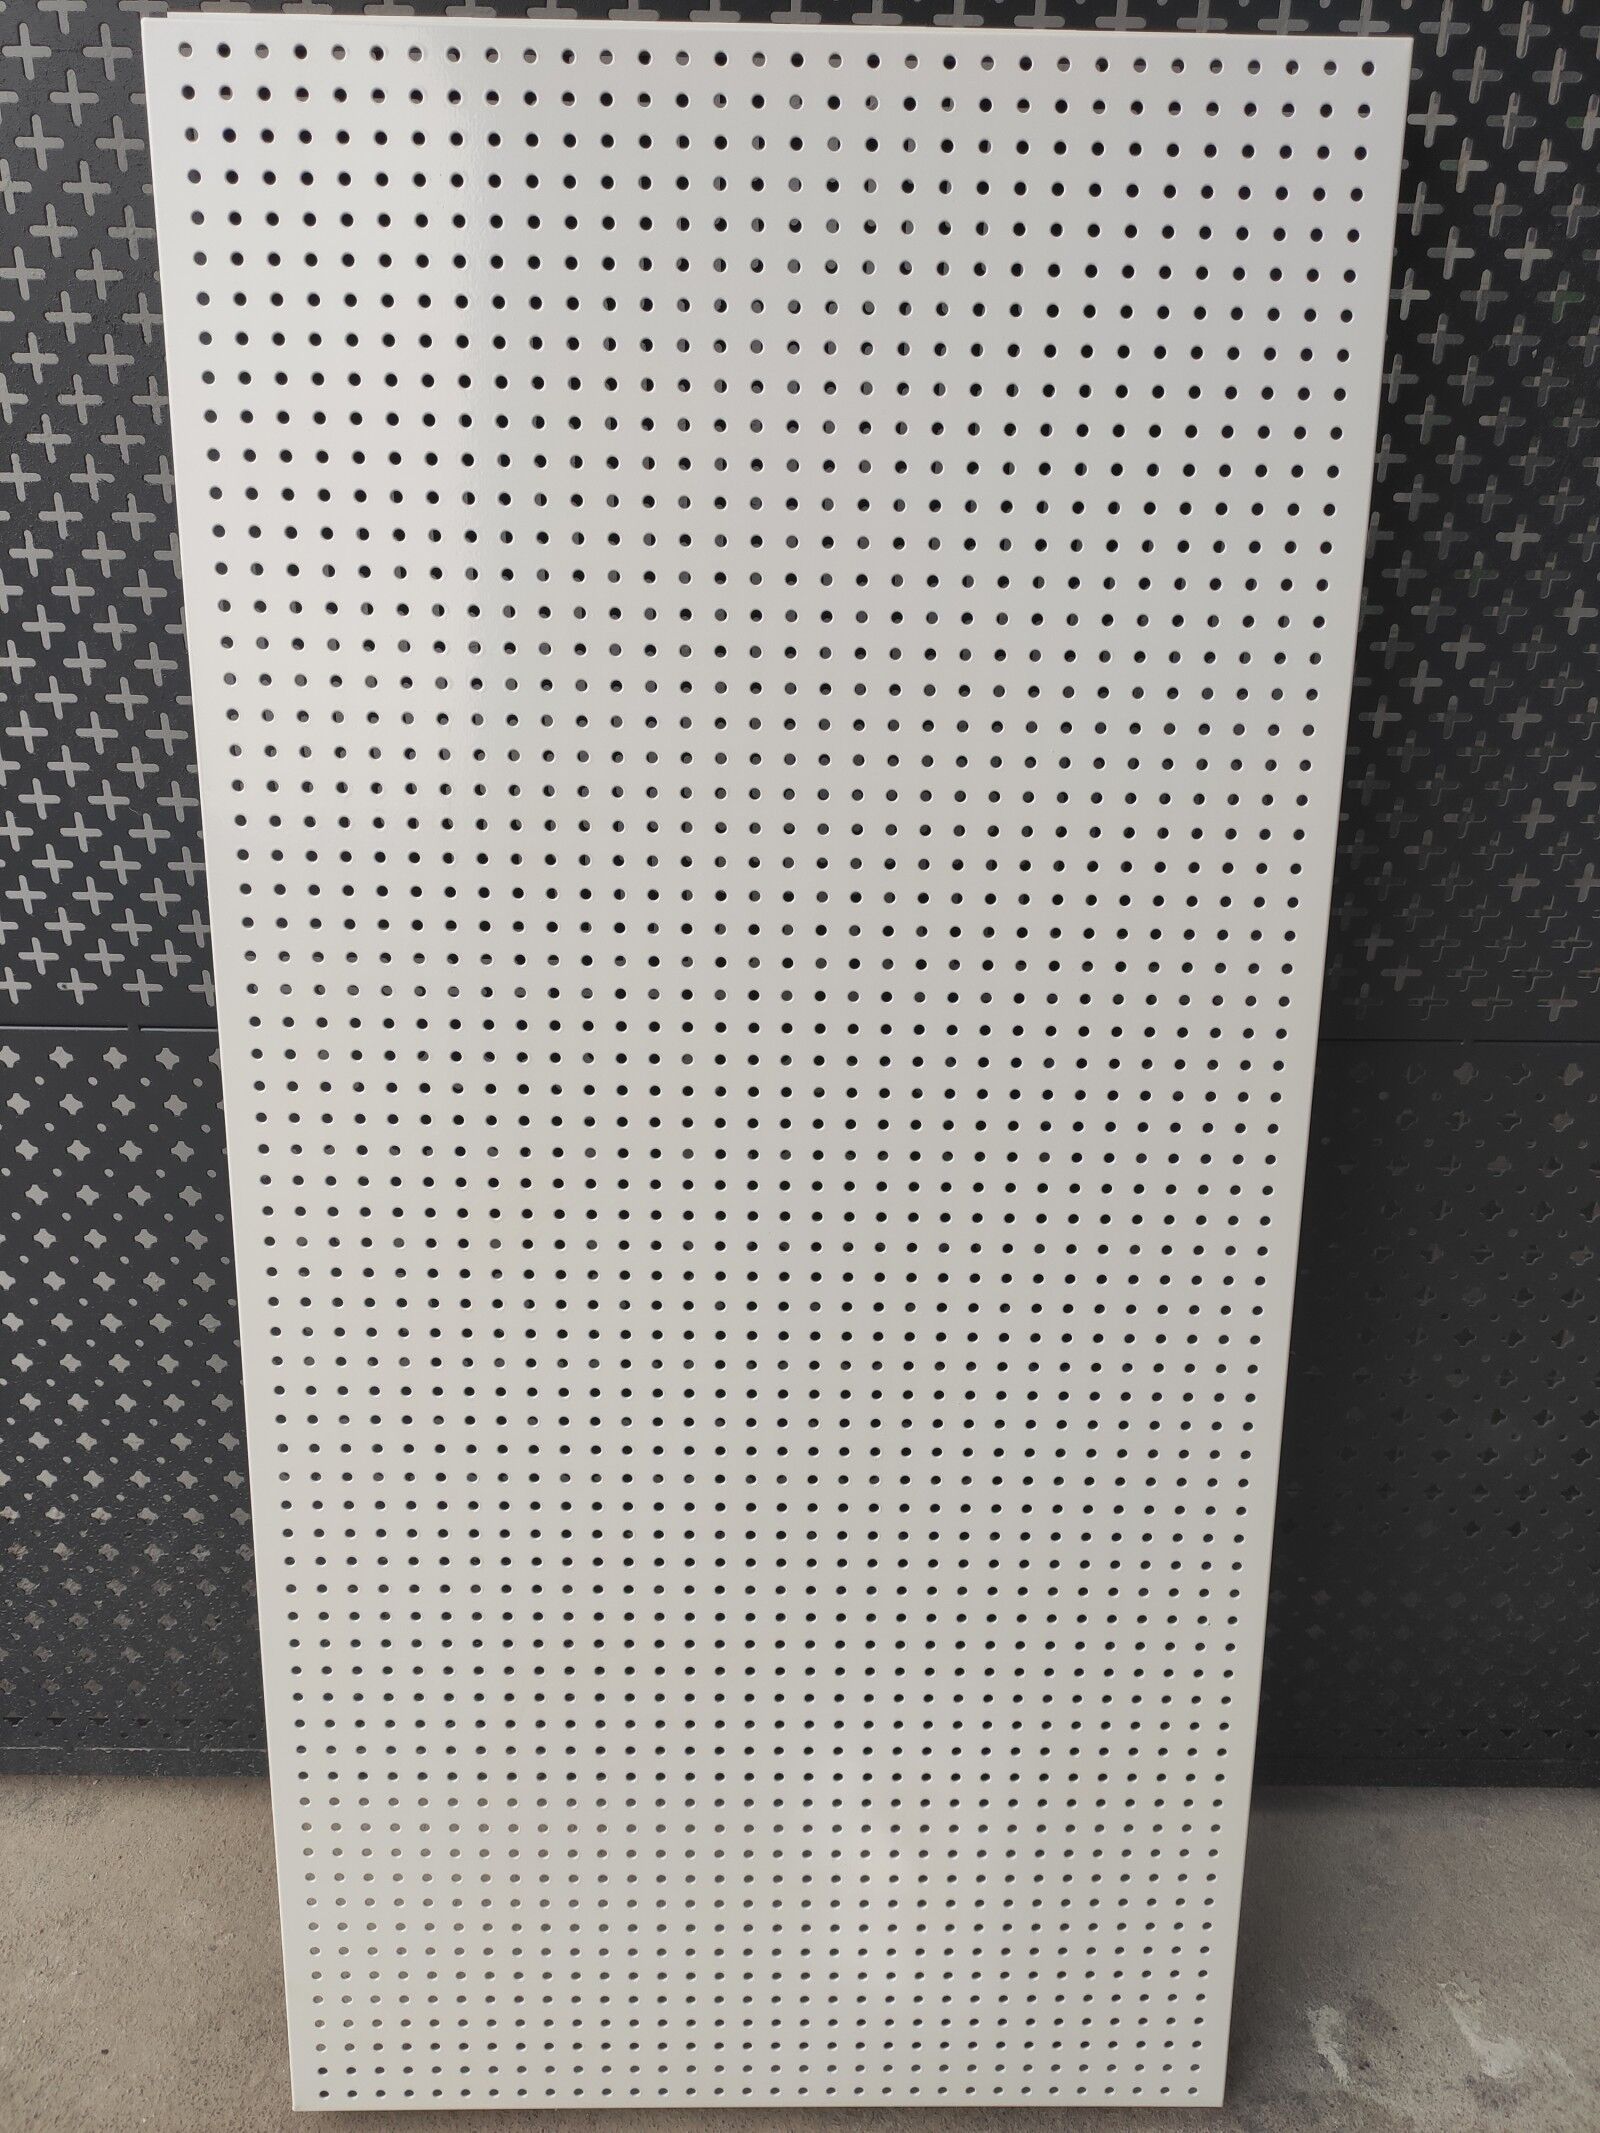 广州厂家穗安圆孔冲孔板 白色烤漆镀锌板 手机店展示架穿孔板